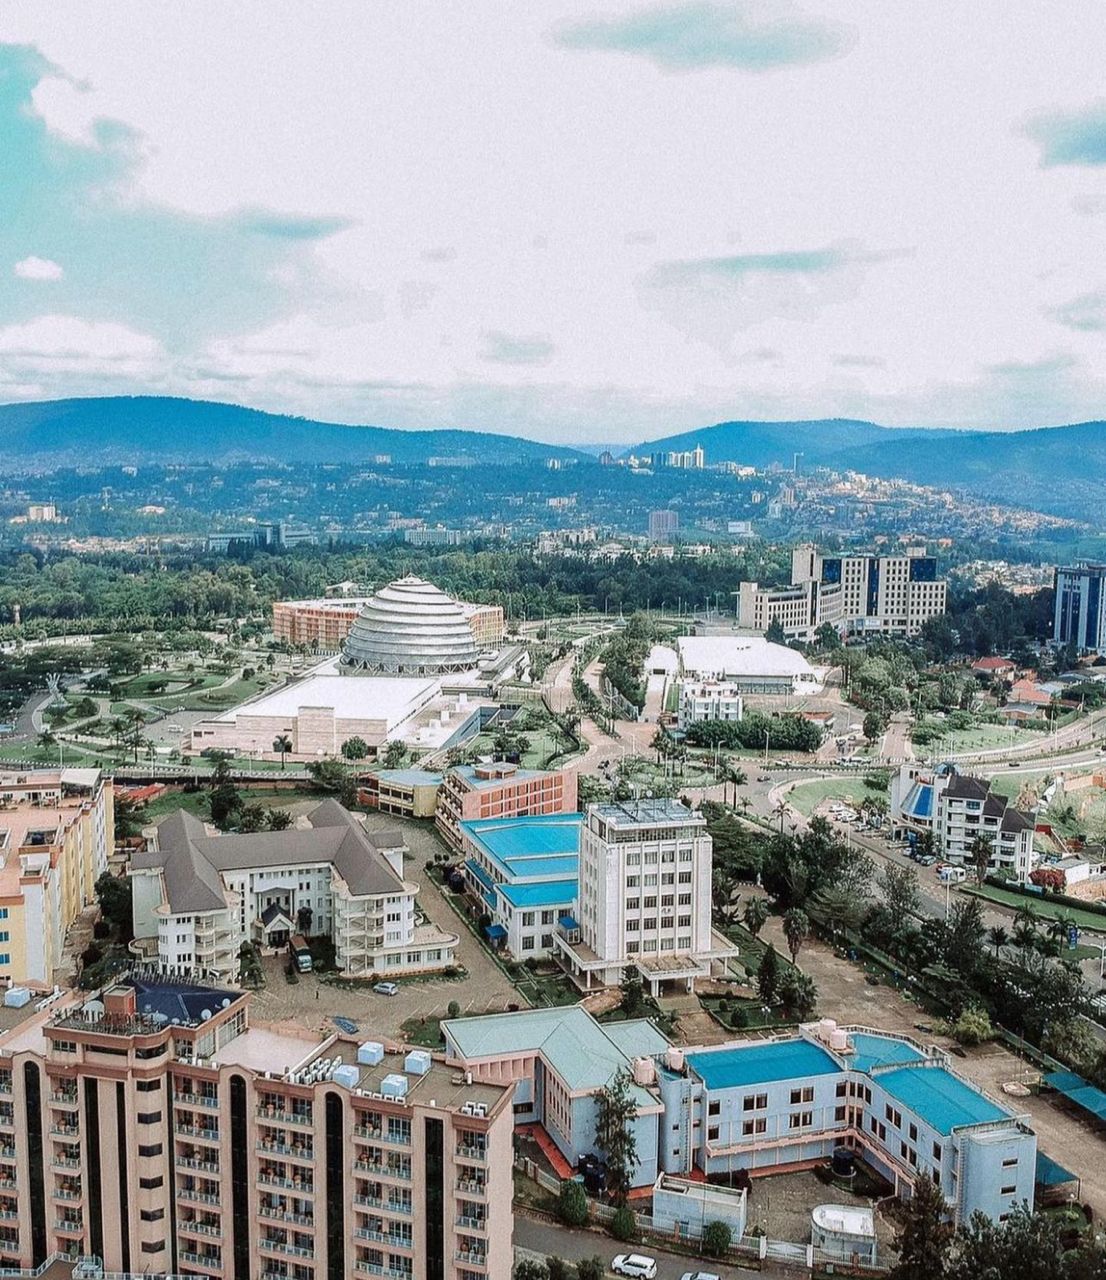 Kigali City Day Trip